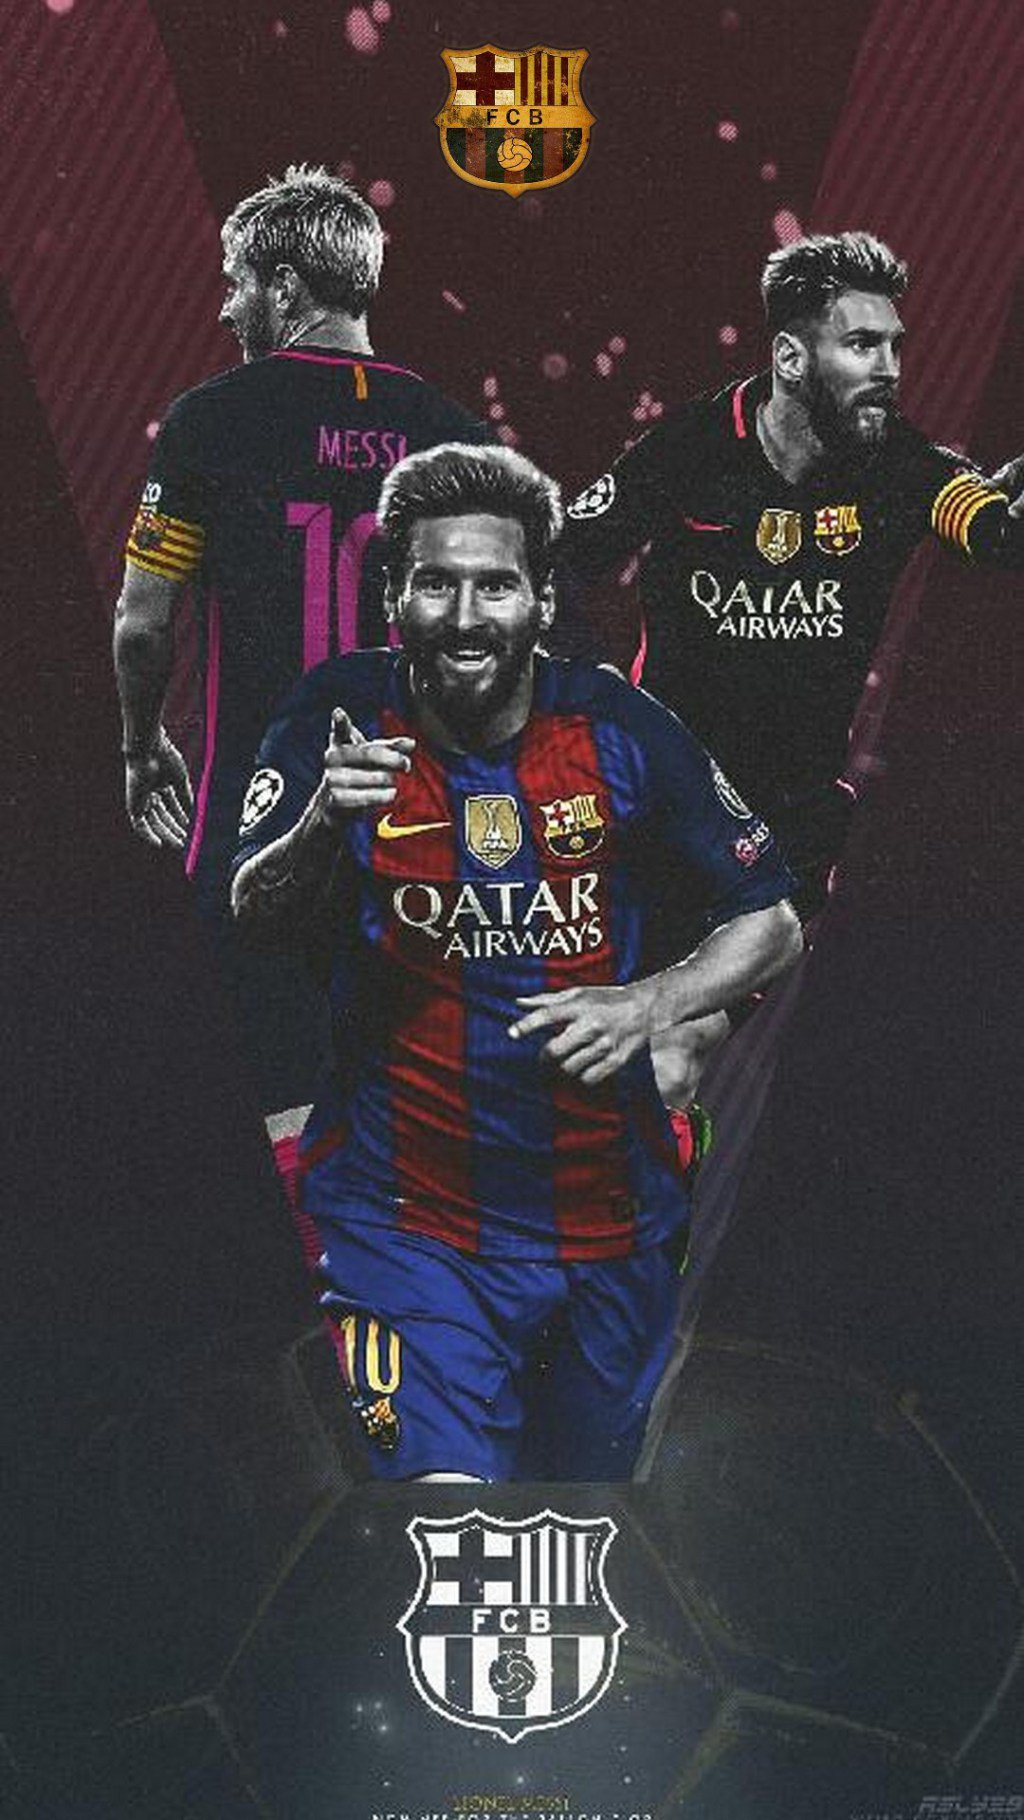 Barcelona là nơi Messi thể hiện sự nghiệp của mình và được ngưỡng mộ bởi hàng triệu người hâm mộ bóng đá trên thế giới. Là một fan của anh ta, hãy tải xuống một bức tranh nền iPhone Messi đầy cảm hứng và điểm nhấn Barcelona. Với các thiết kế độc đáo và thu hút, món quà này sẽ khiến màn hình của bạn trở nên đặc biệt hơn bao giờ hết.